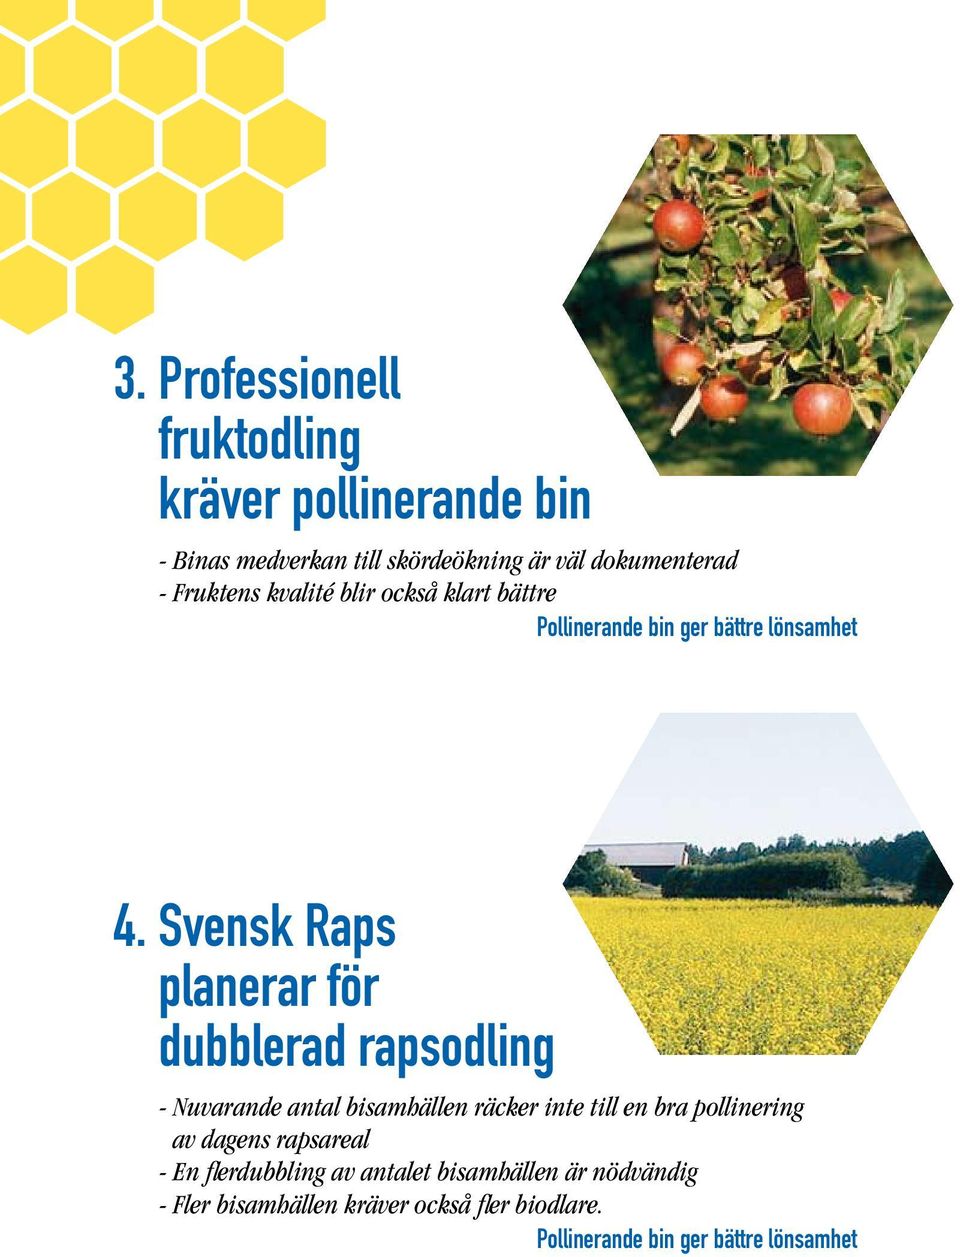 Svensk Raps planerar för dubblerad rapsodling - Nuvarande antal bisamhällen räcker inte till en bra pollinering av